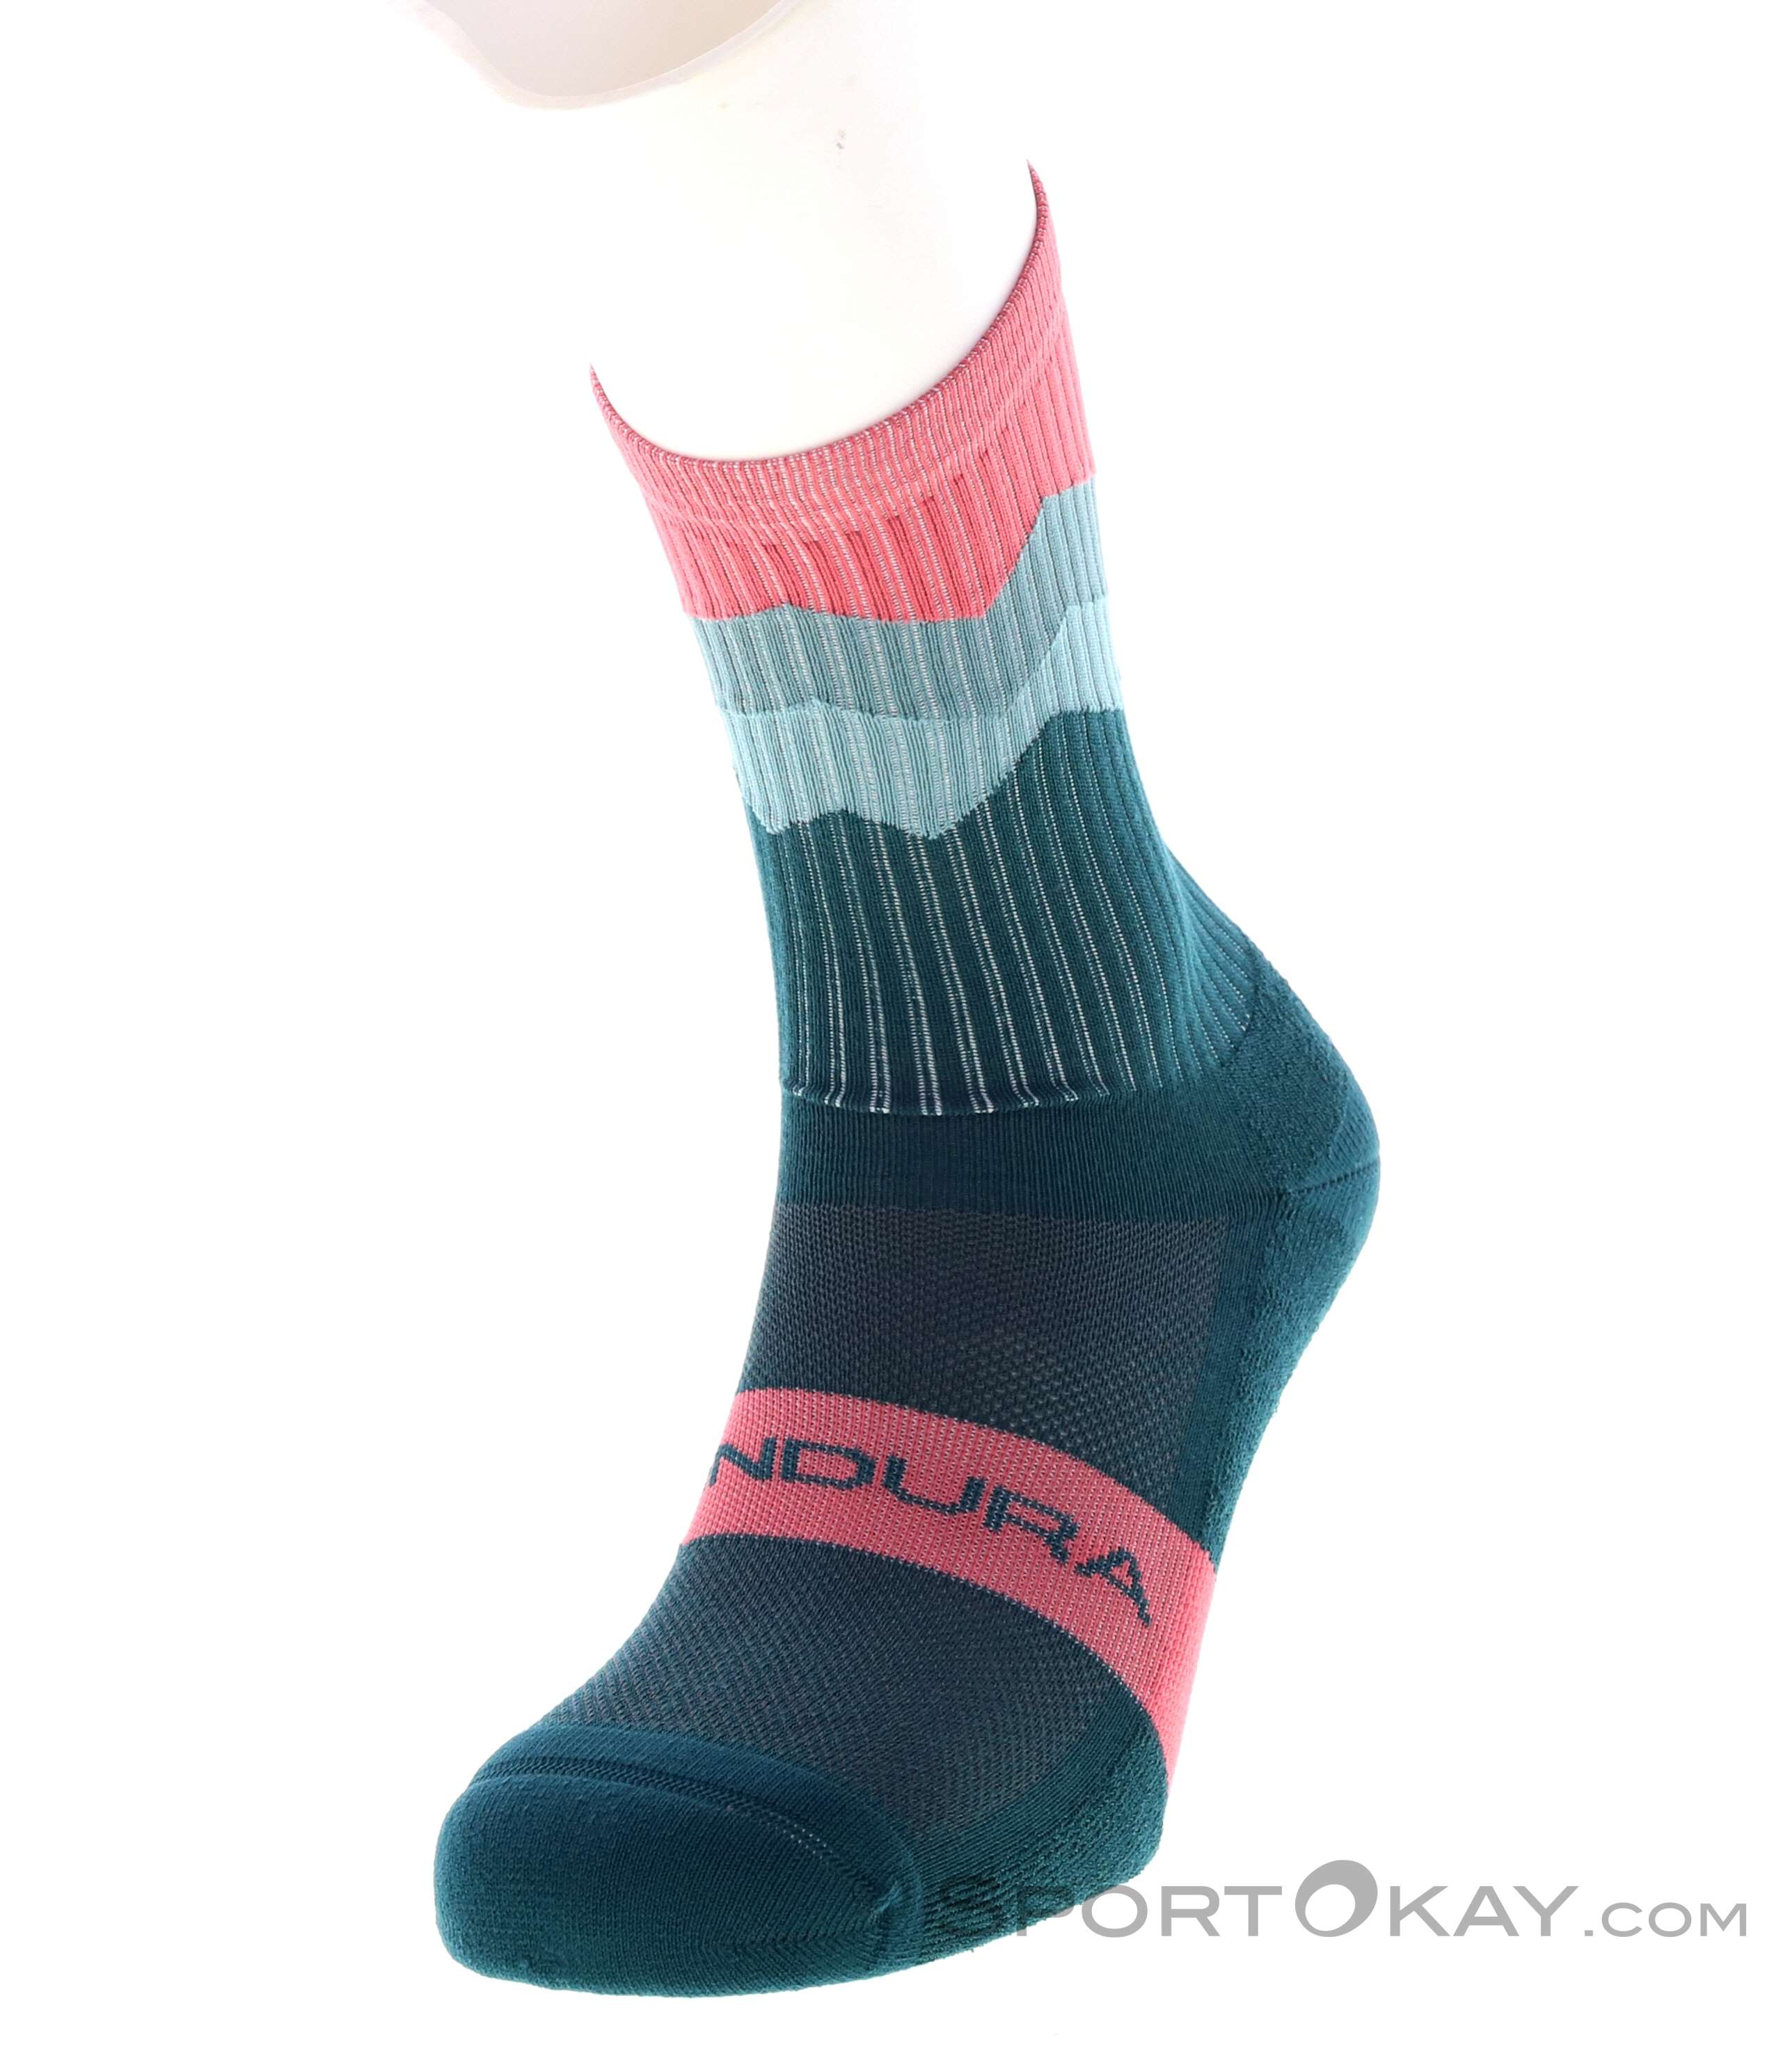 Endura Jagged Sock Biking Socks - Socks - Bike Clothing - Bike - All